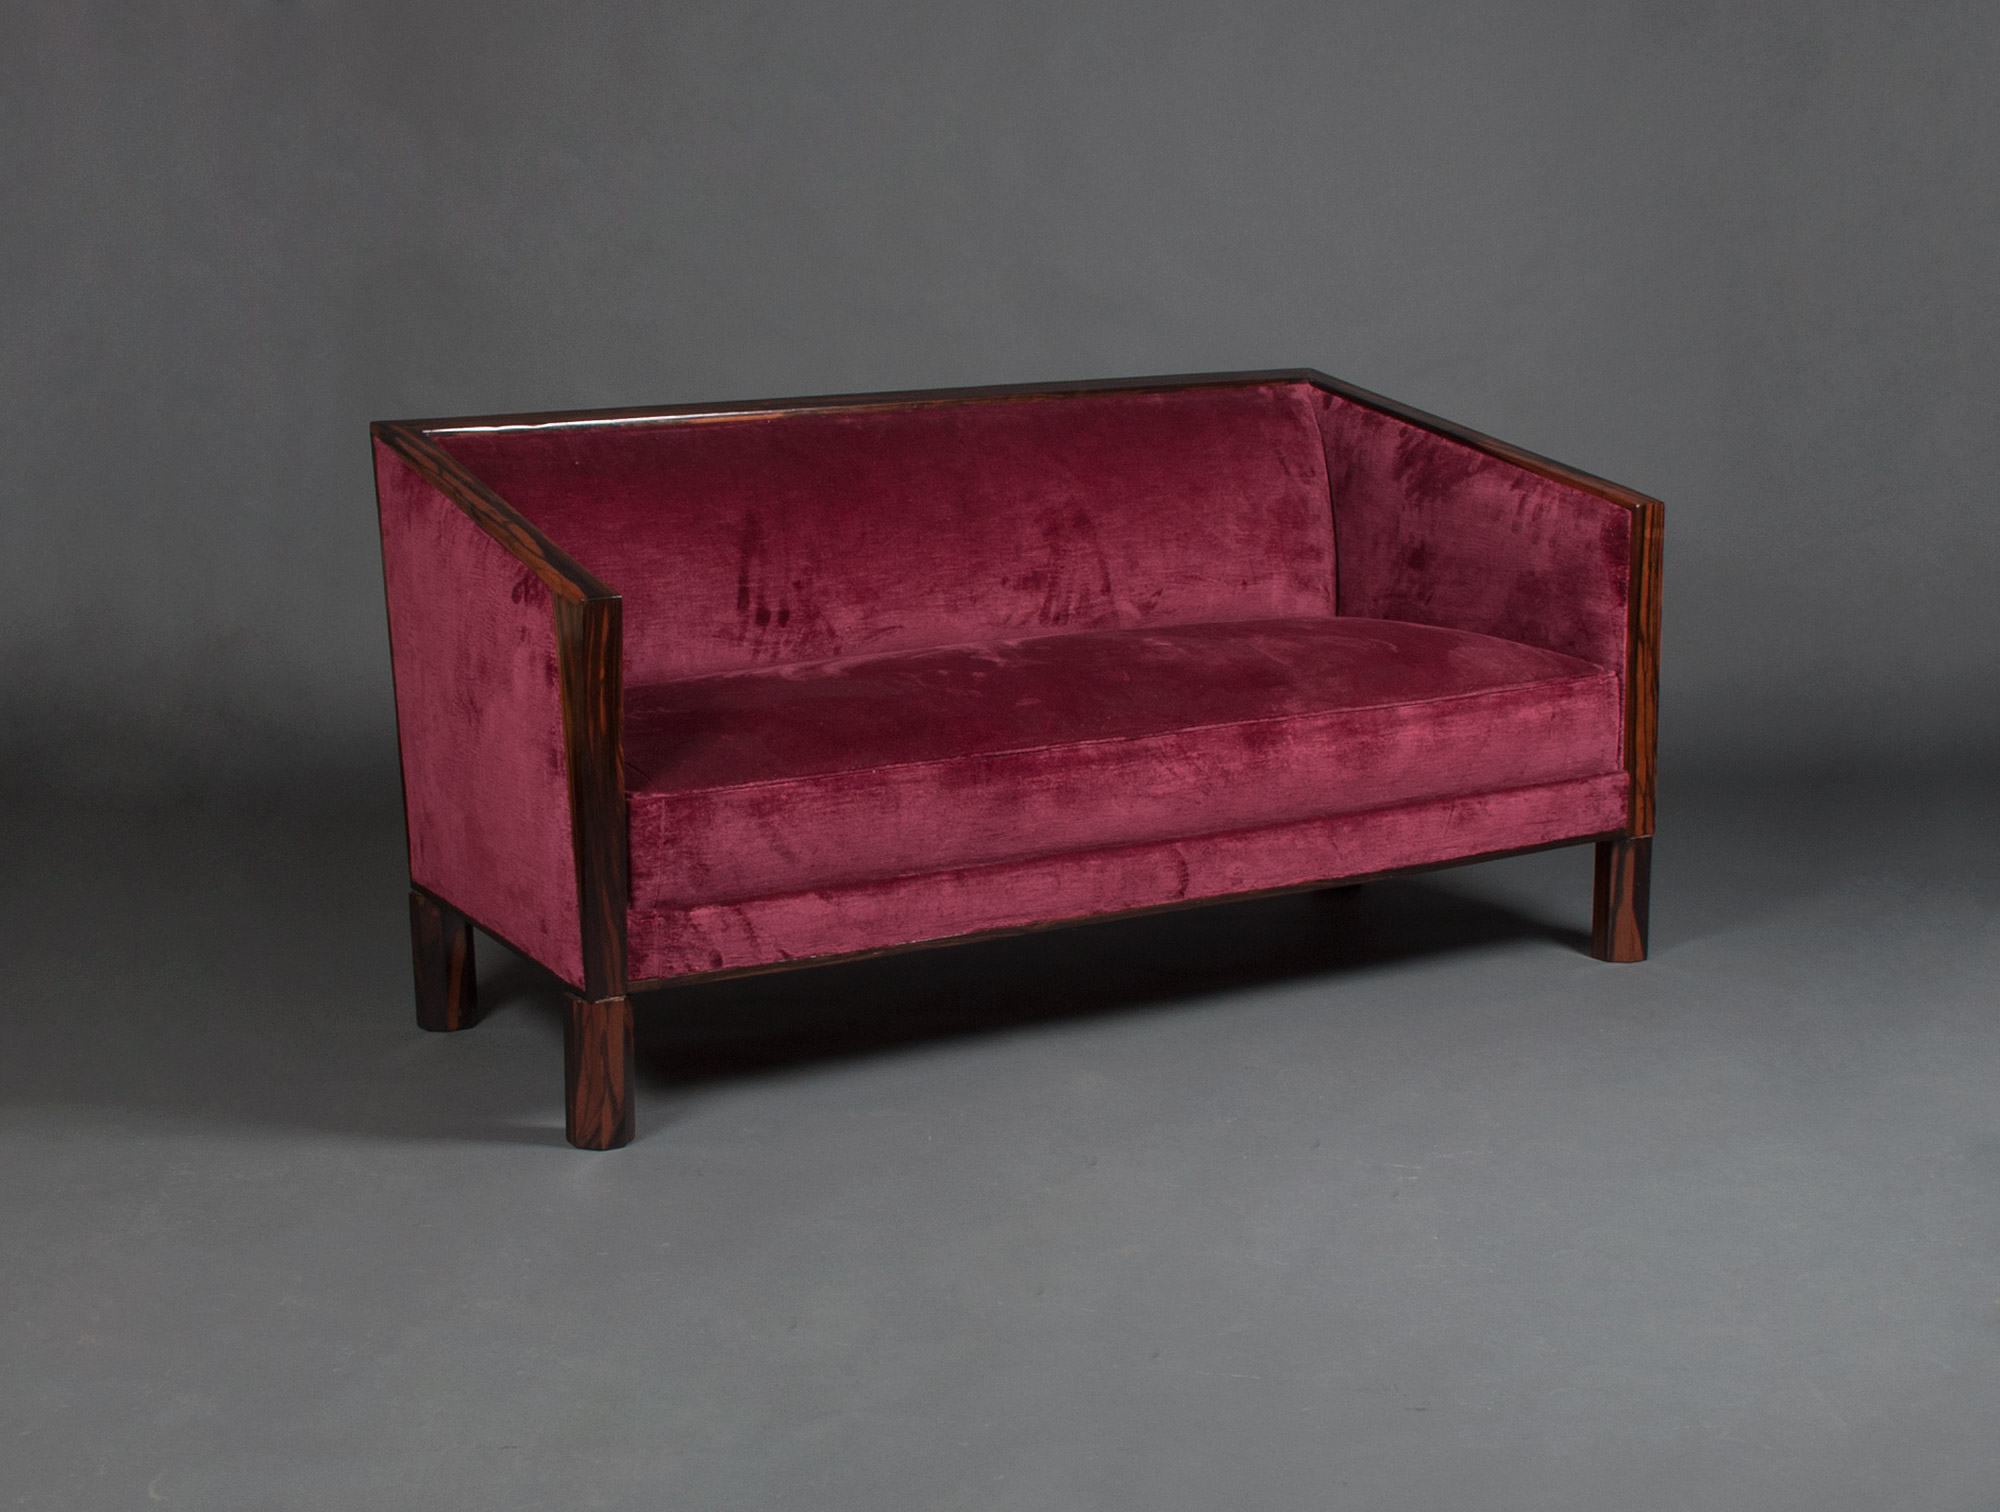 Verwaand matras medaillewinnaar Rosewood Art Deco & red velvet sofa Soubrier - Rent Seats Sofa Art deco